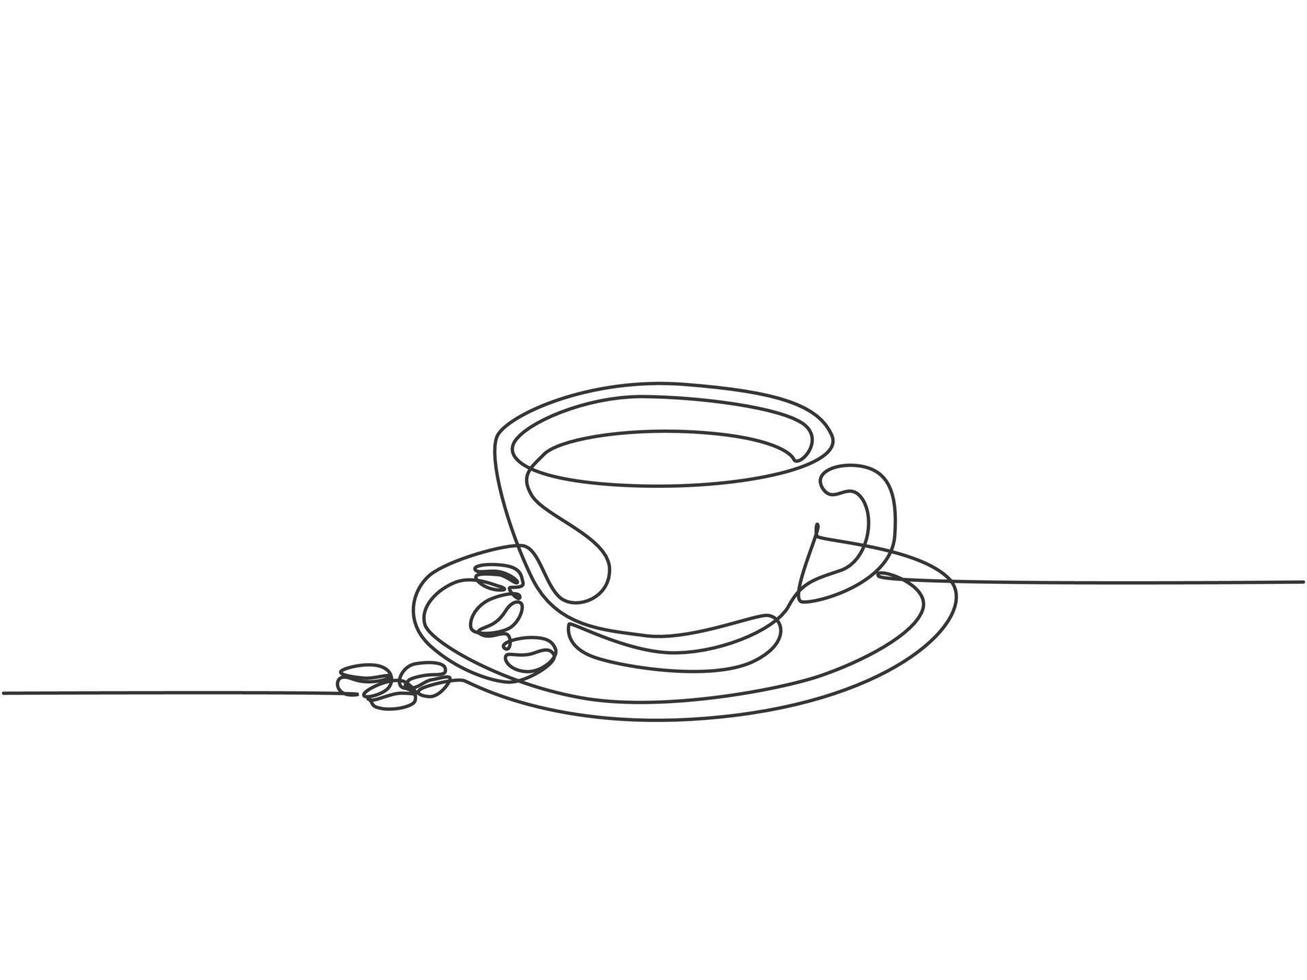 enda kontinuerlig linje ritning av en kopp kaffedryck med kaffebönor på keramiska underlägg och bord. kaffedryck koncept display för kafé. en linje rita design illustration vektor